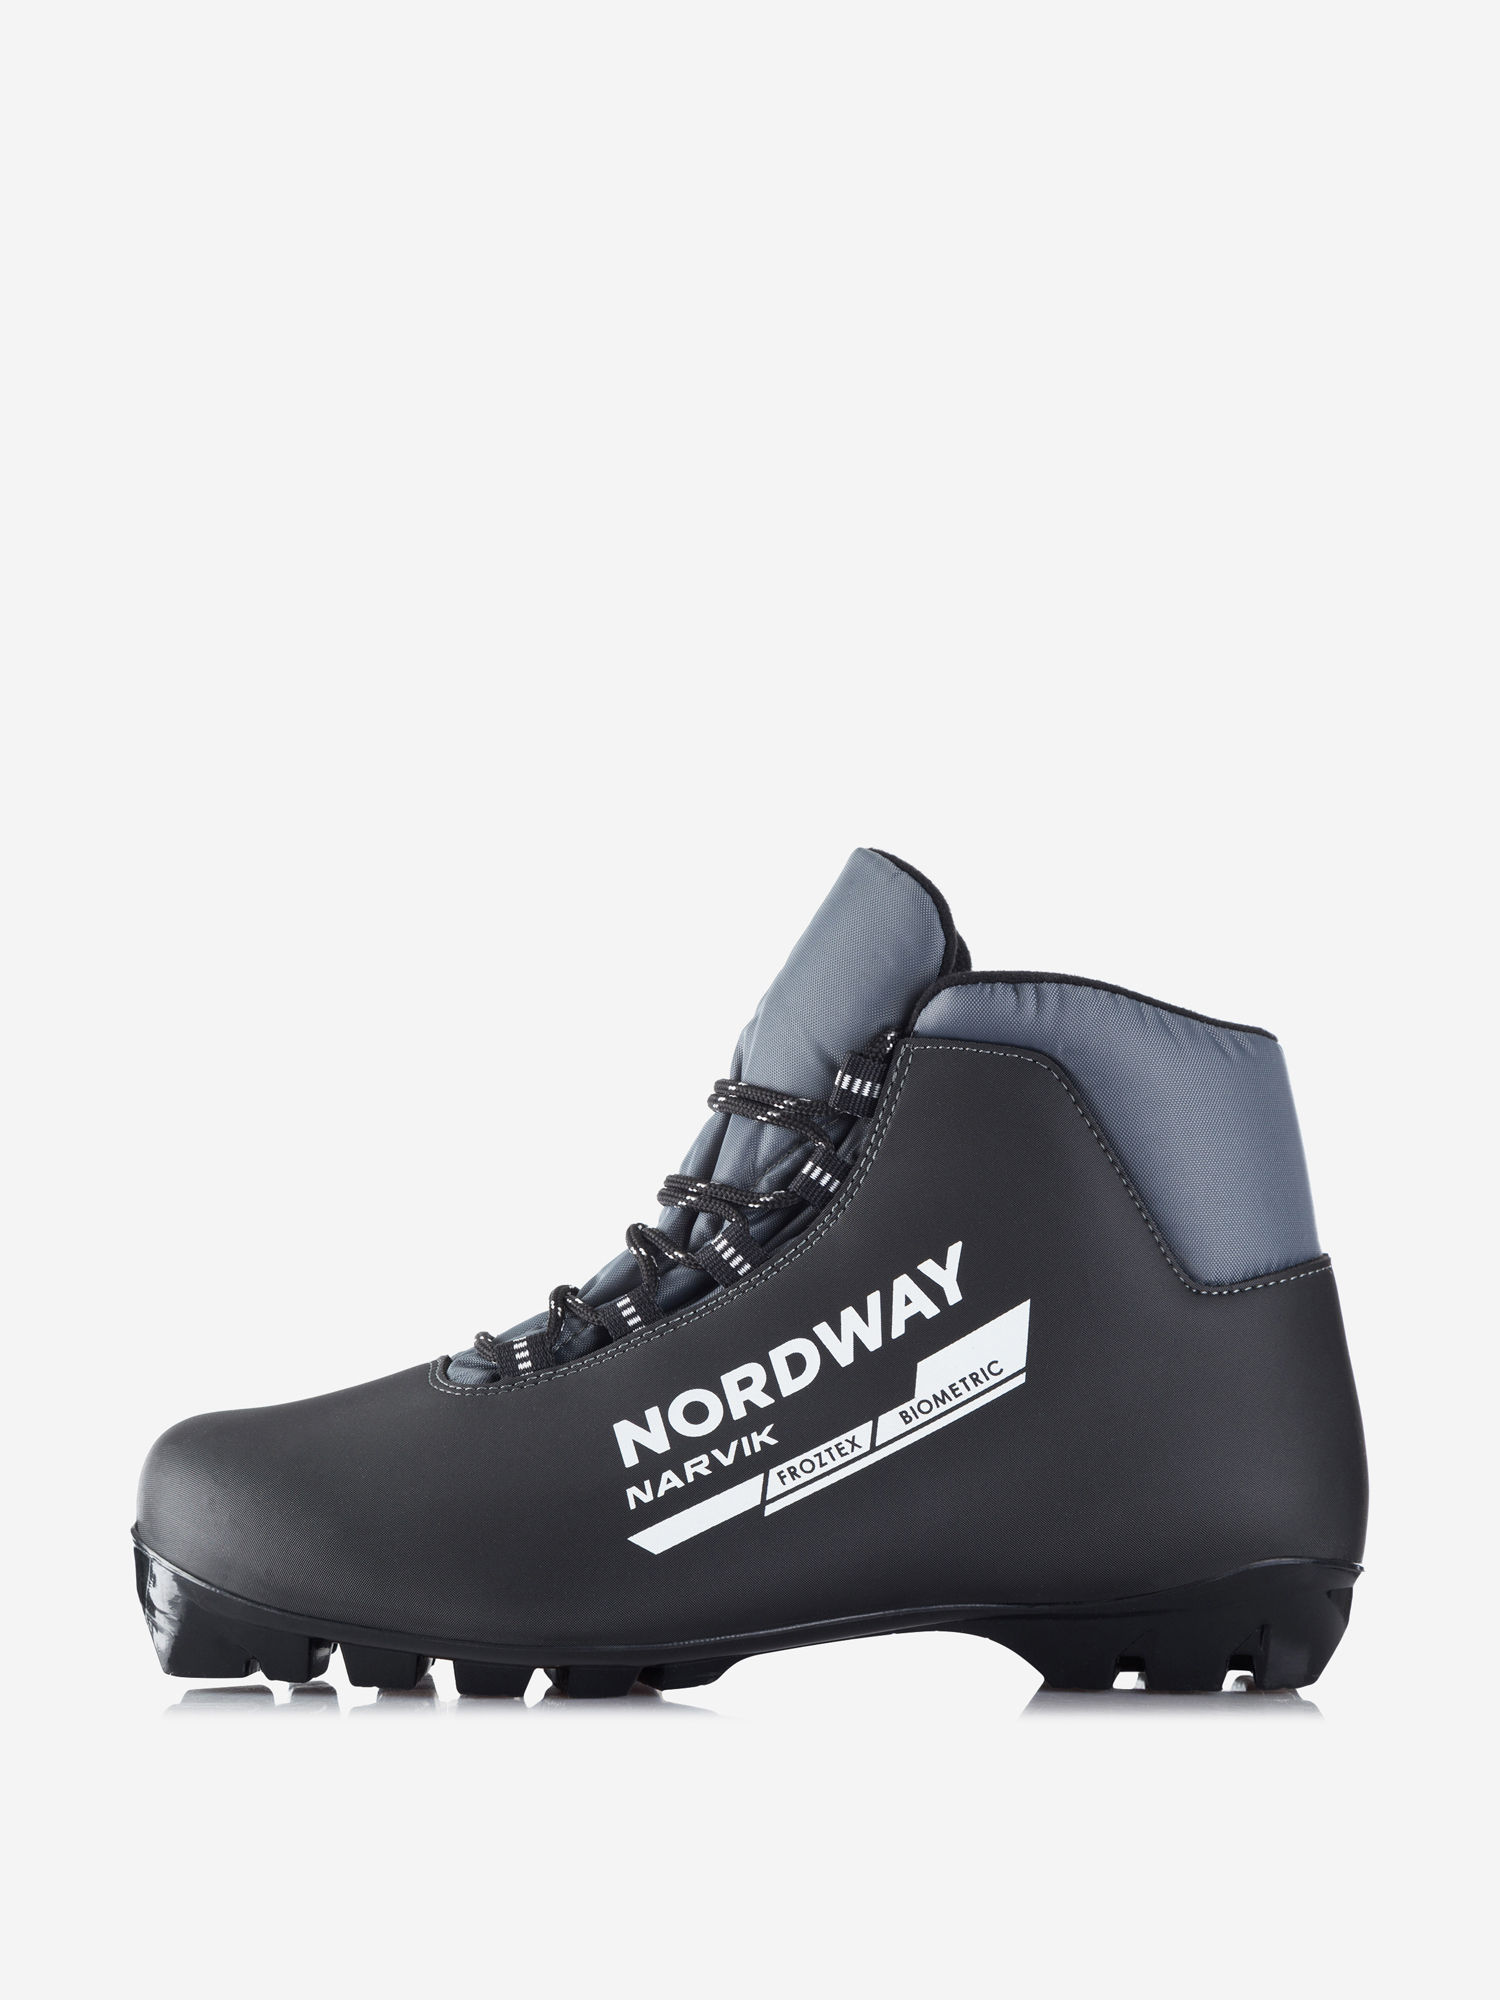 Ботинки для беговых лыж Nordway Narvik NNN